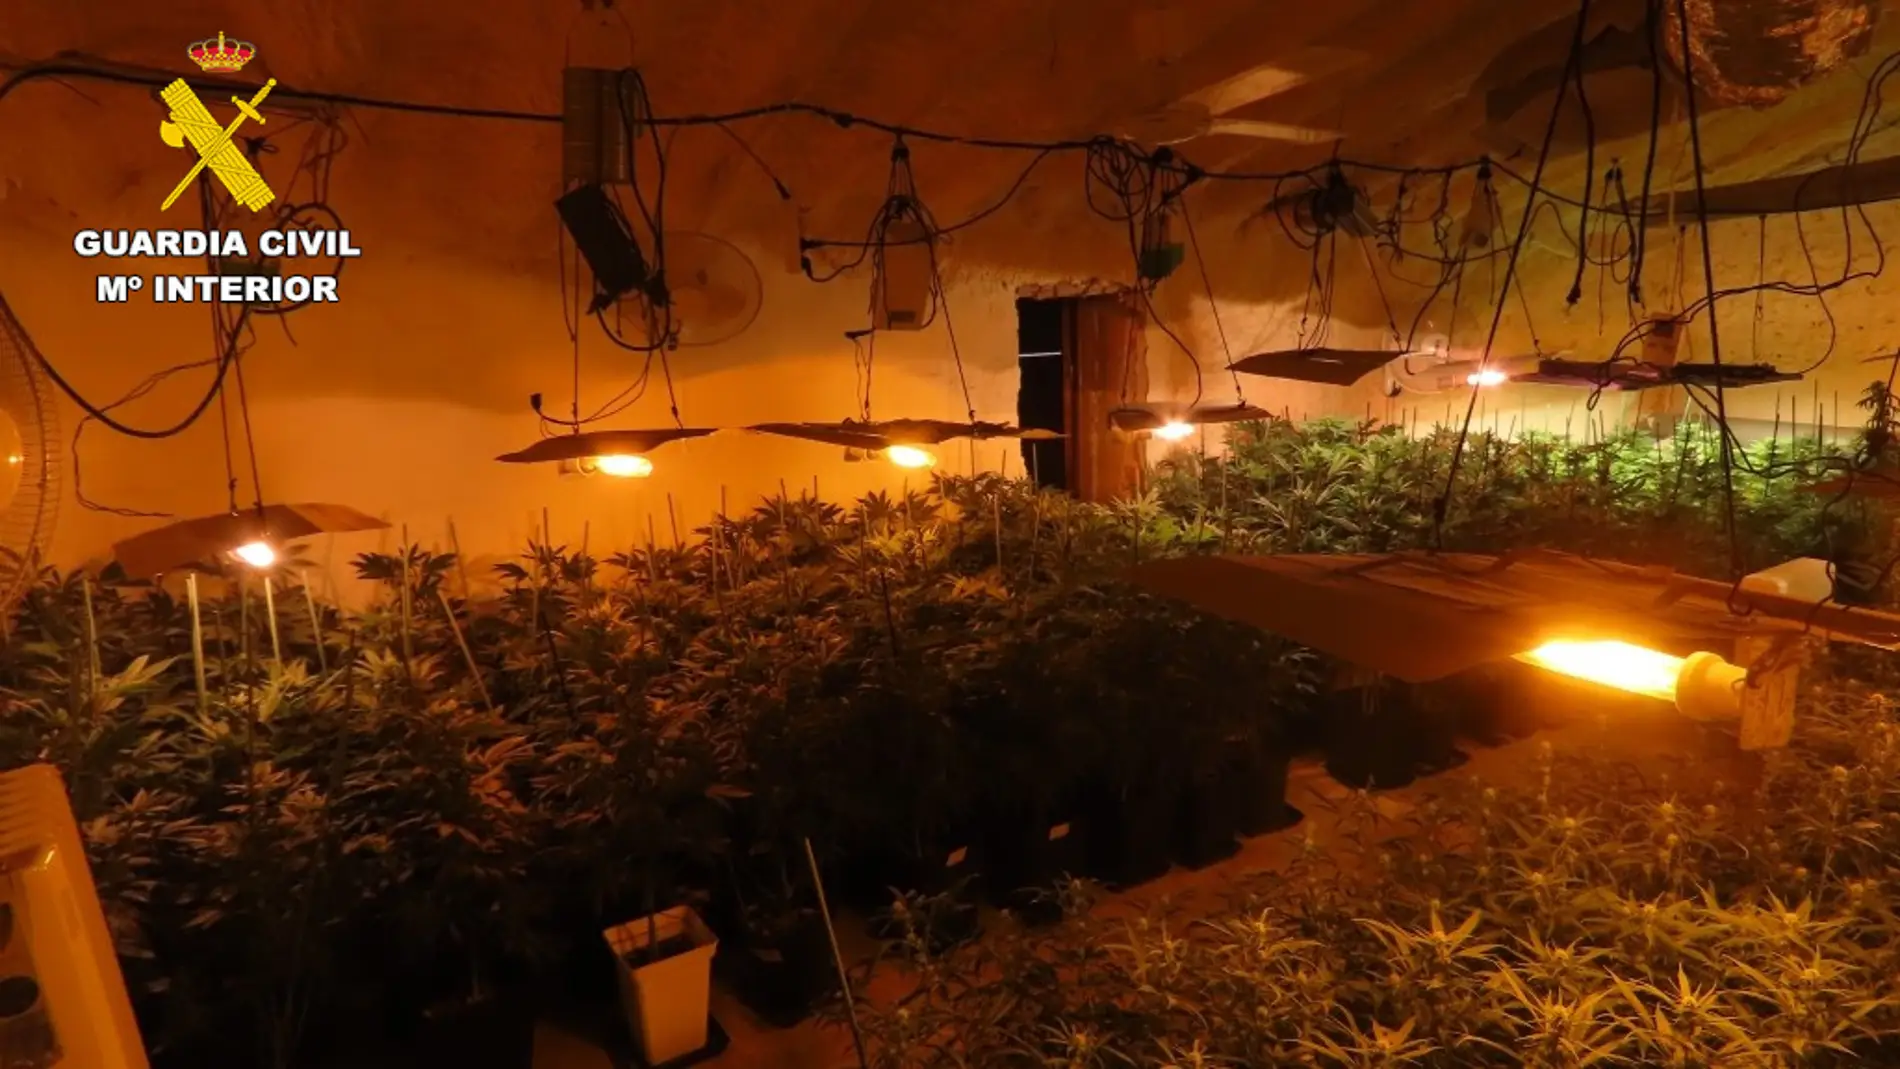 Plantación indoor de marihuana